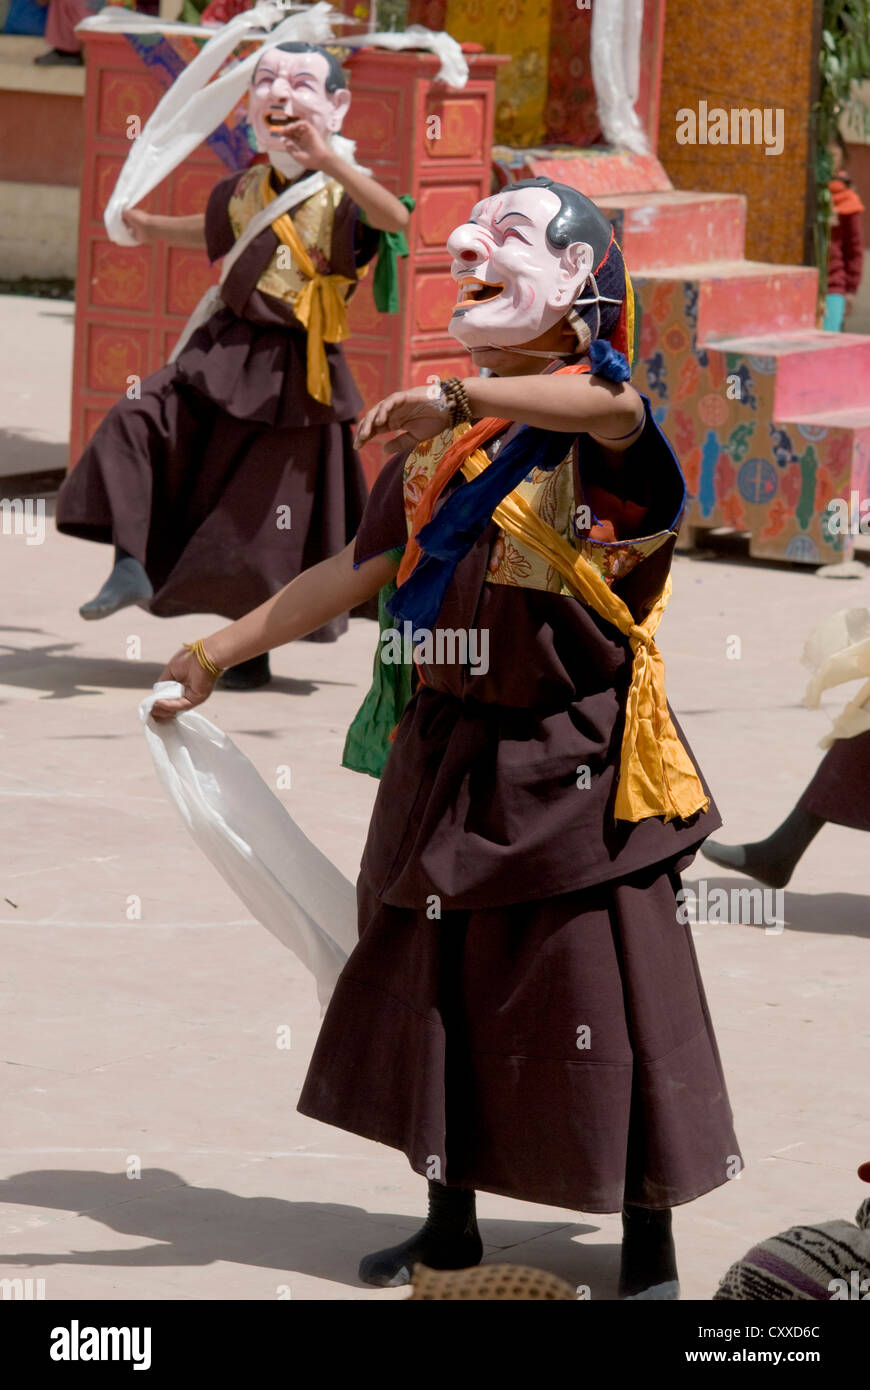 Mascherare i monaci buddisti eseguire una danza rituale in occasione dell'annuale Festival Kungri nel Pin valley, Spiti, India settentrionale Foto Stock